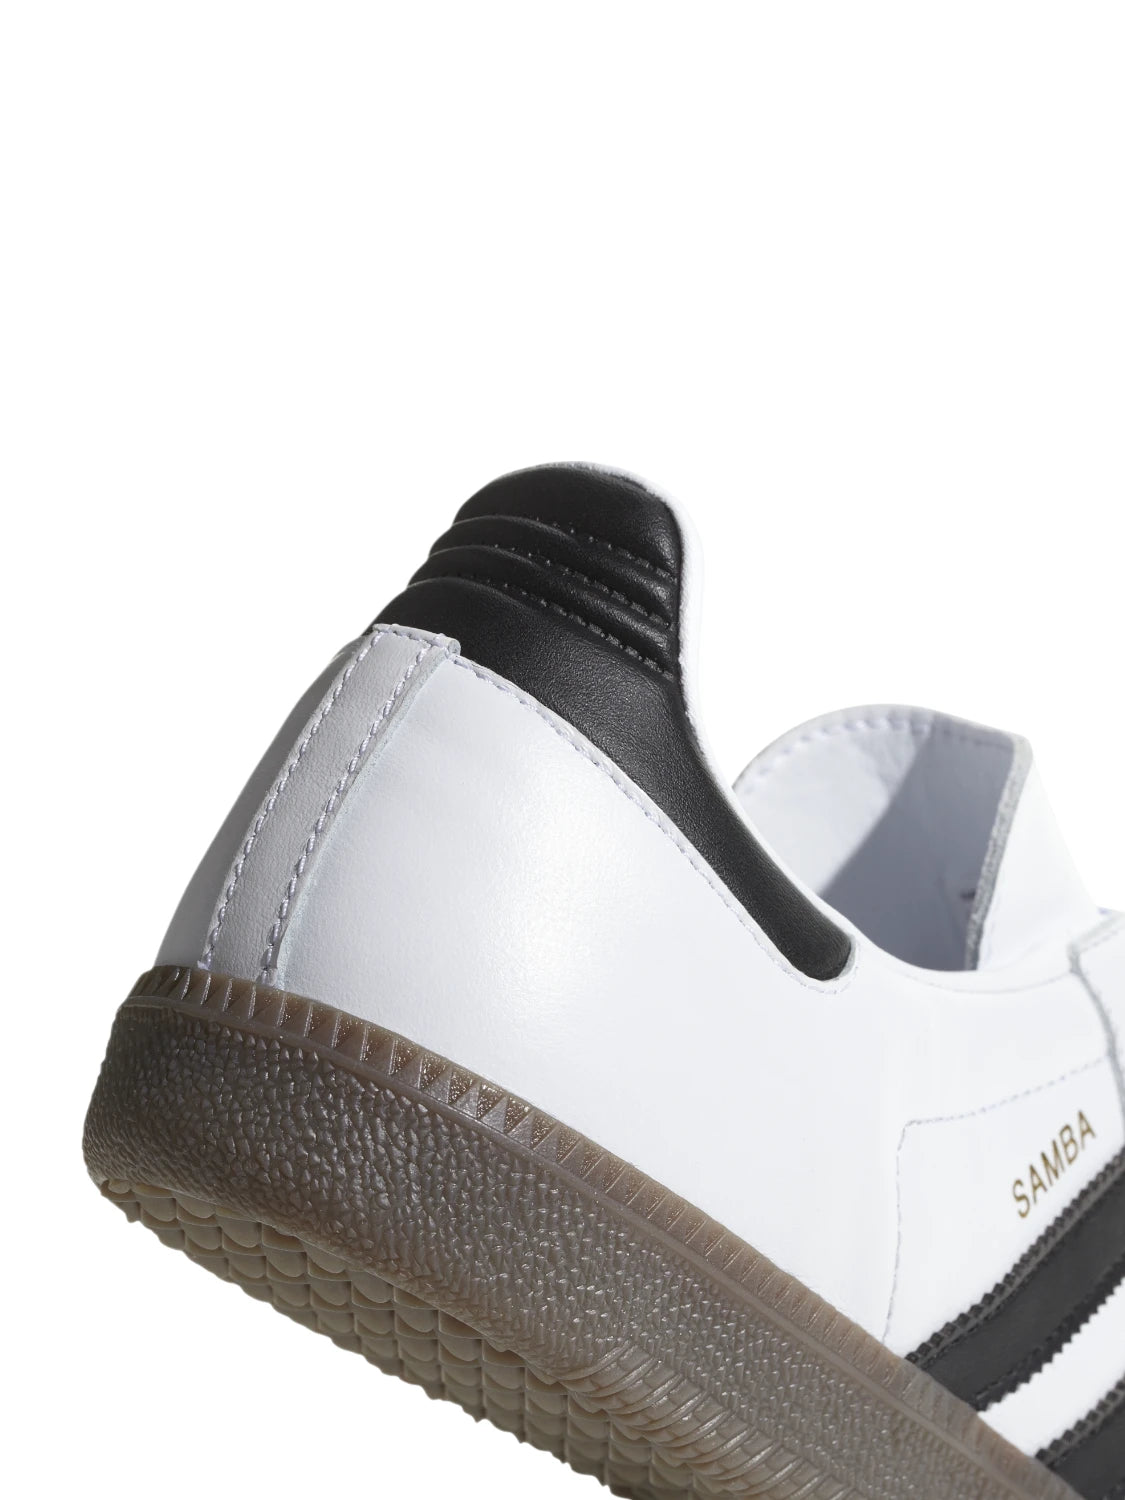 SCARPE SAMBA OG-Sneakers-Adidas Originals-Vittorio Citro Boutique